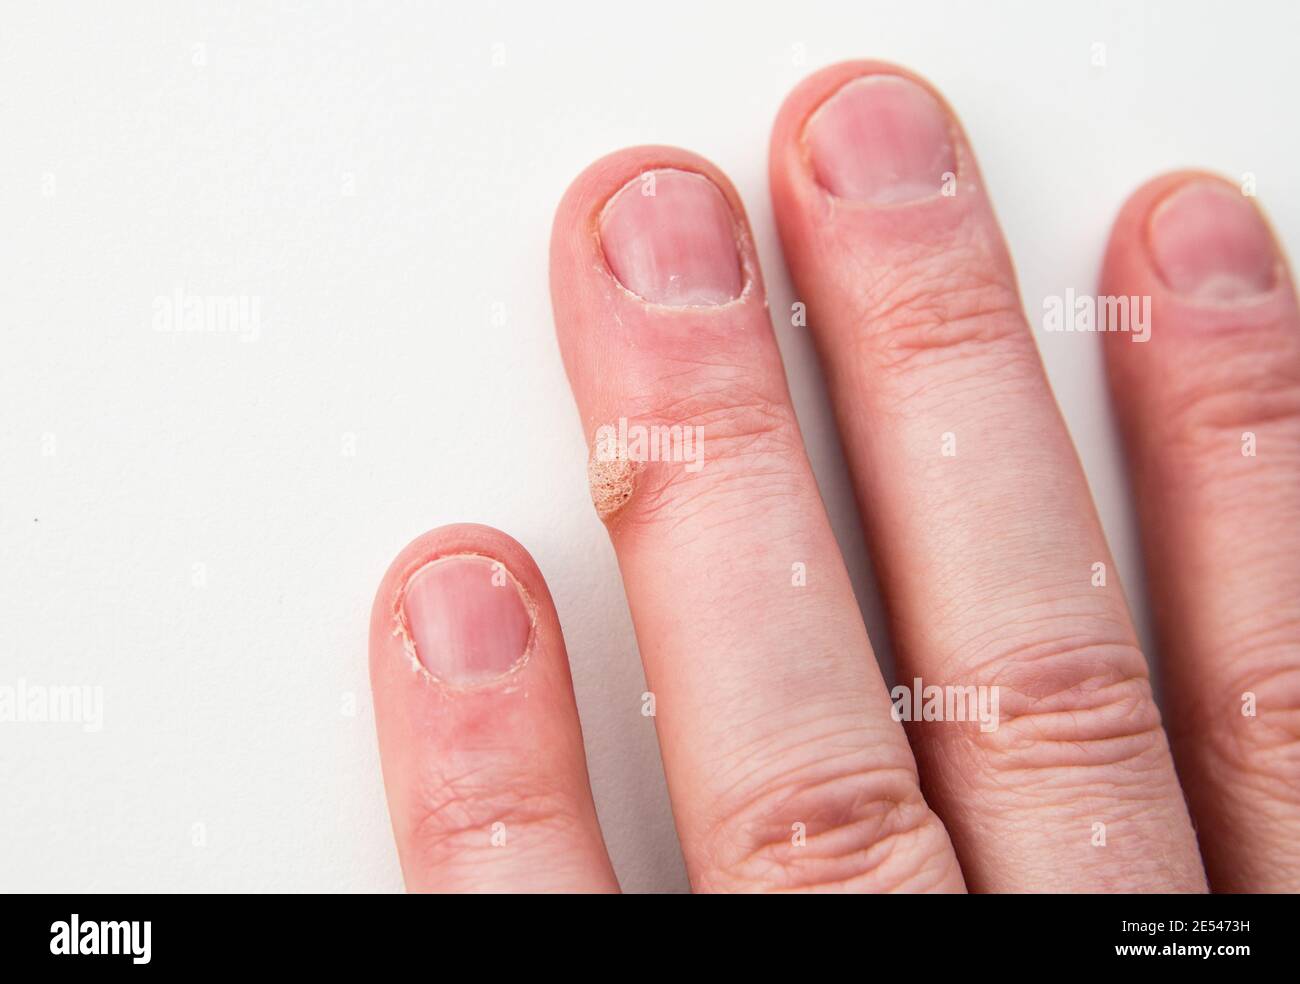 Vue rapprochée de la maladie de la peau appelée verrue causée par le virus du papillome humain sur le doigt humain. Banque D'Images